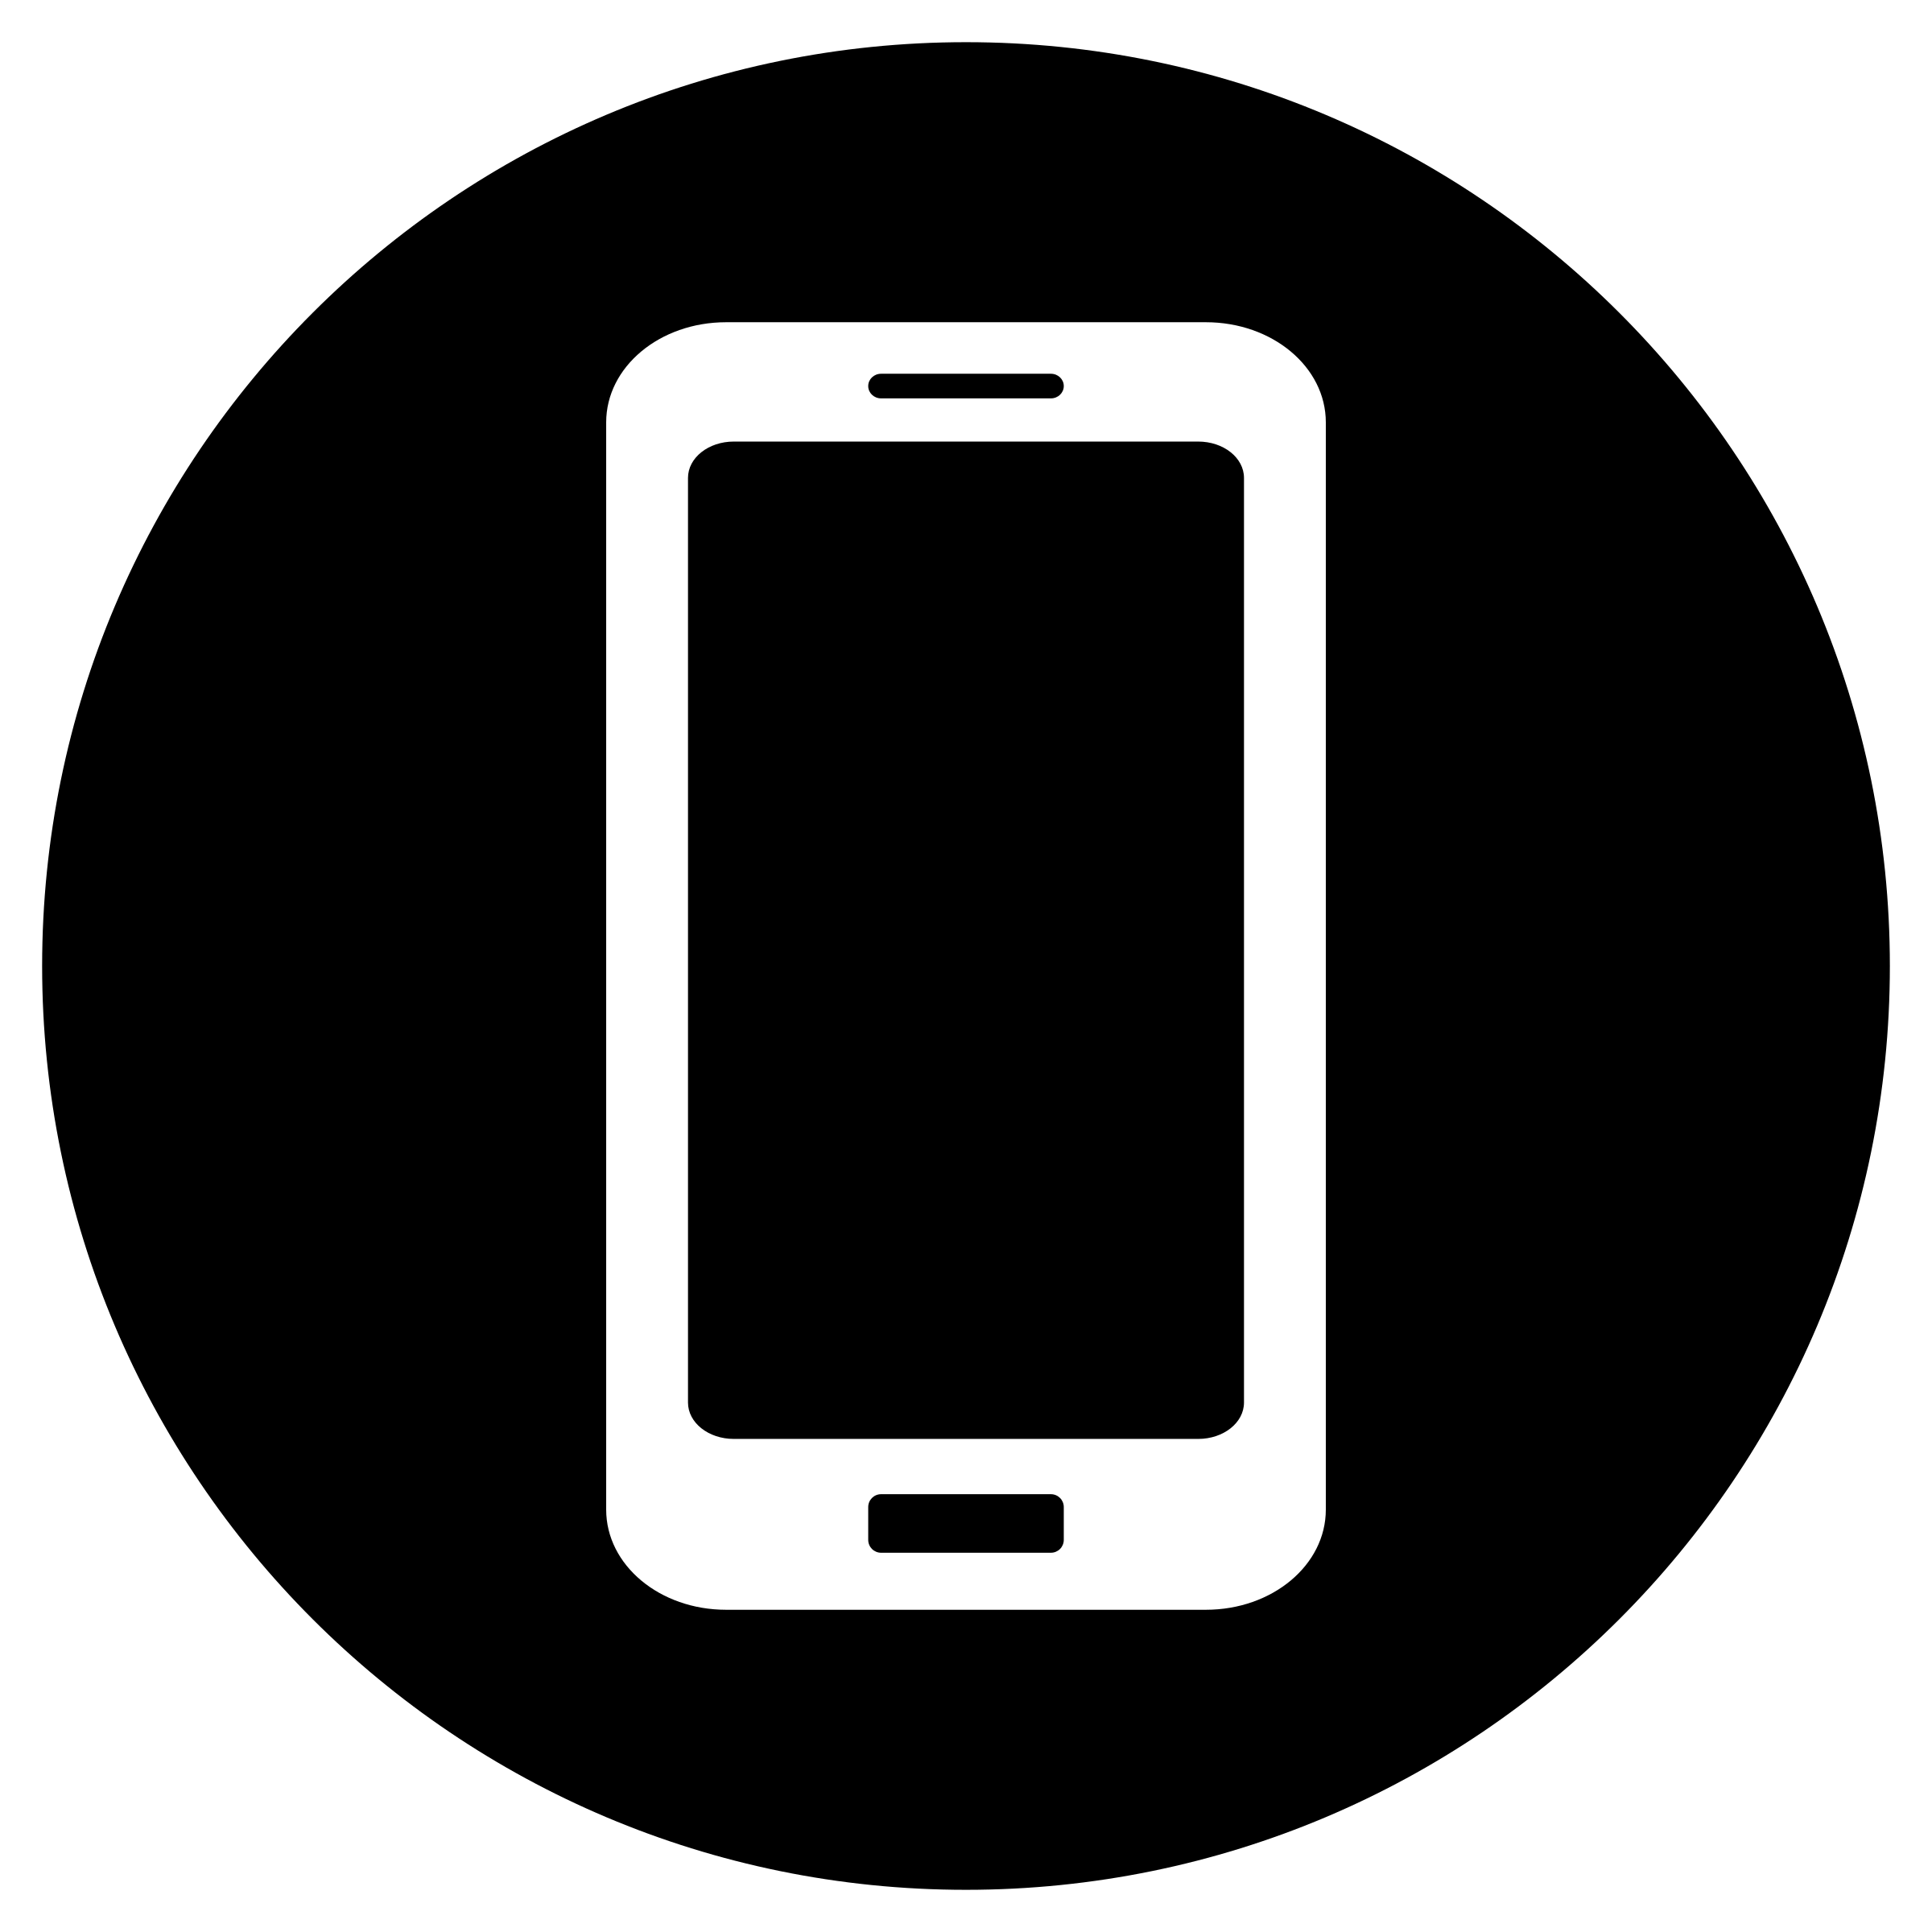 2 24271 clipart mobile icon white on black phone icon